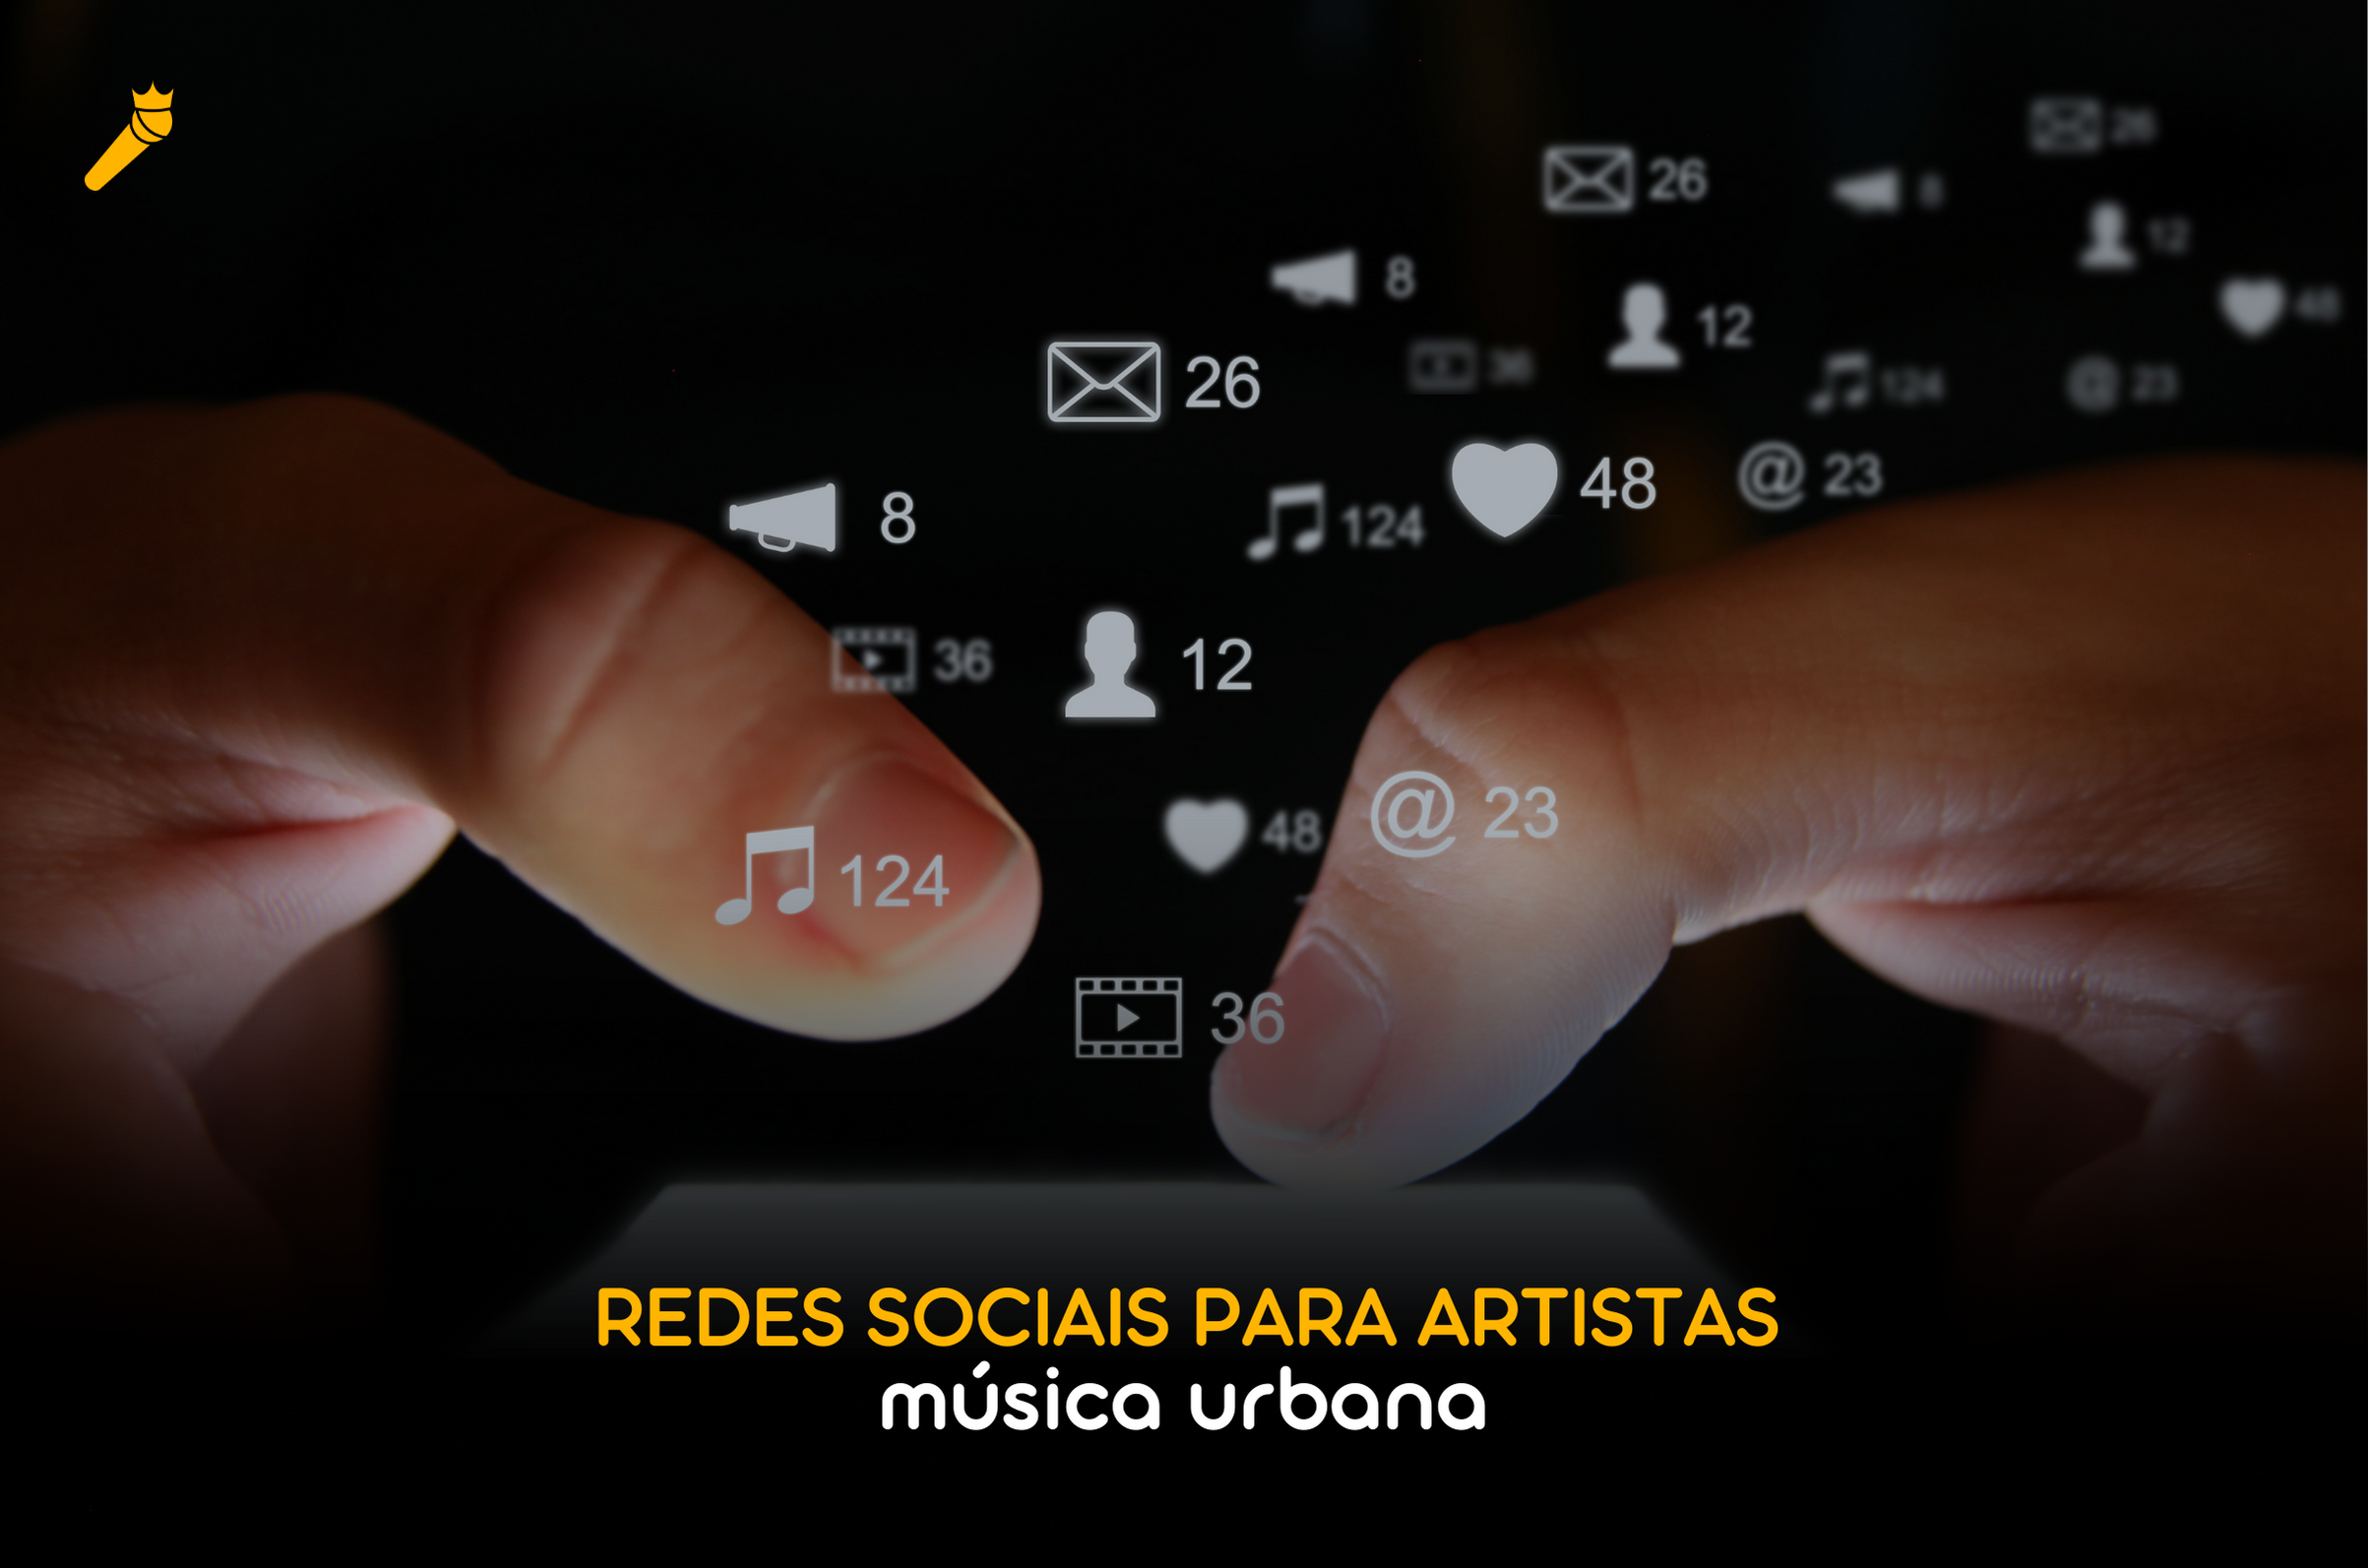 Redes sociais para artistas